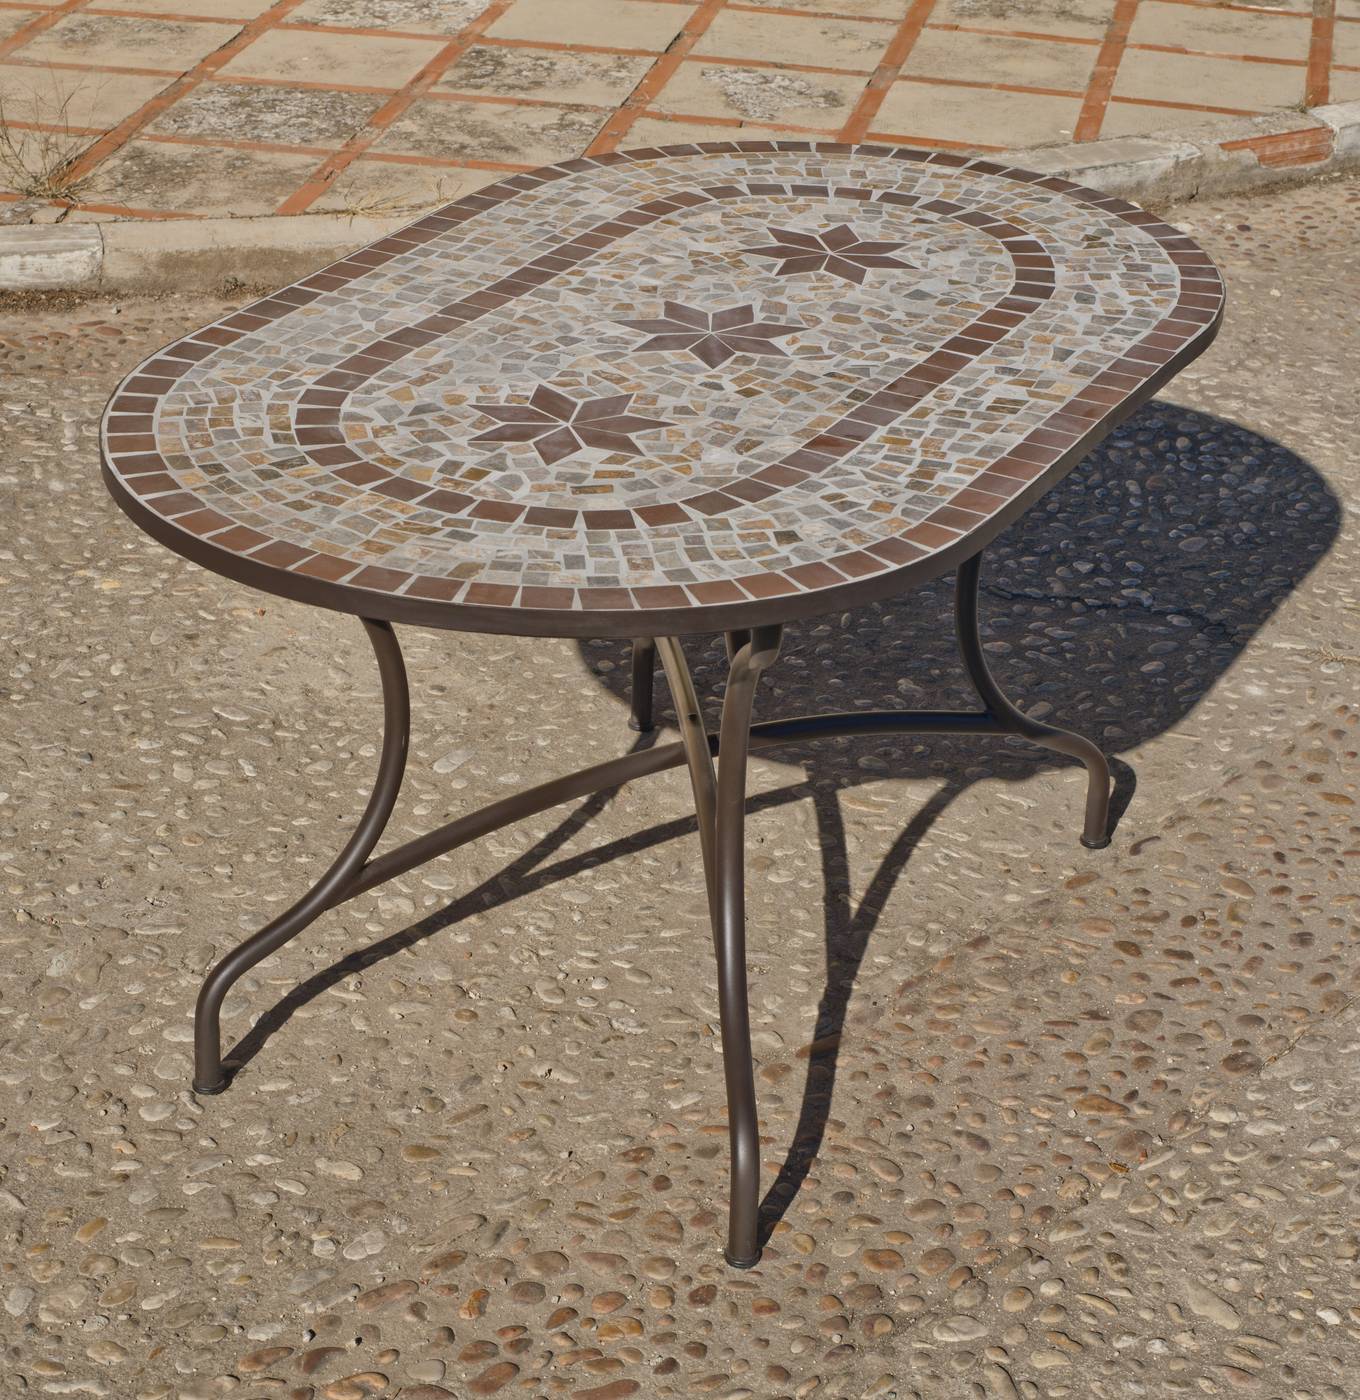 Conjunto Mosaico Luana/Bergamo 150-4 - Conjunto para terraza o jardín de forja: 1 mesa con tablero mosaico + 4 sillones de ratán sintético + 4 cojines. Mesa válida para 6 sillones.